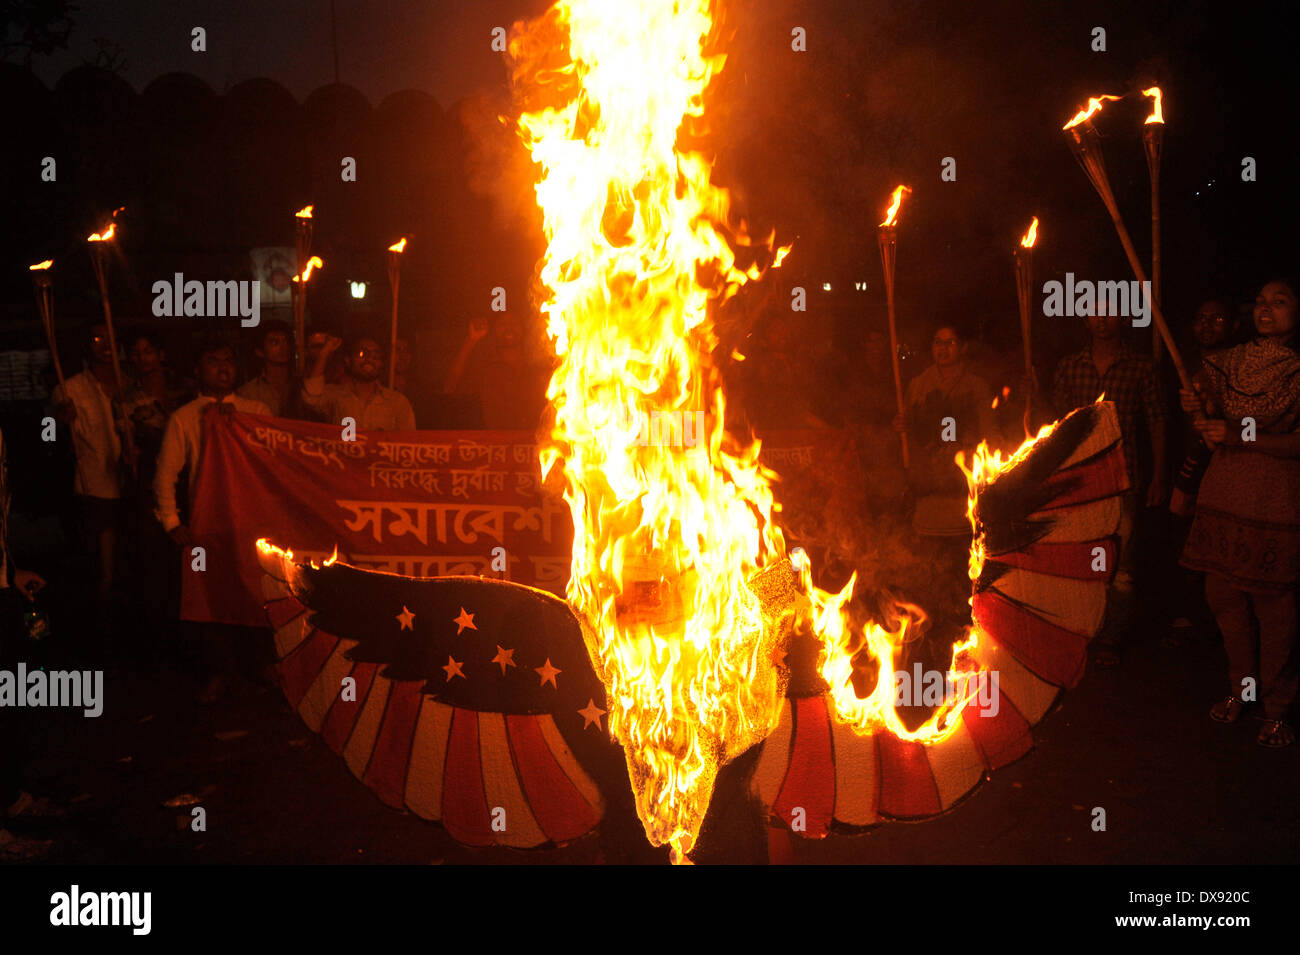 Dhaka, Bangladesh - 20 mars 2014 : groupe d'étudiants de gauche, Bangladesh, Fédération Satra rallié à Shahbag à Dhaka, pour protester contre l'impérialisme d'Amérique en Asie Pacifique. Ils ont brûlé un aigle et une effigie de missiles. Le président américain Bill Clinton est venu à Dhaka en 2000 et il a signé de nombreux traités entre les États-Unis et le Bangladesh. La protestation a soulevé l'attention de la police locale, puisqu'il coïncidait avec la journée de lutte contre l'impérialisme américain. Credit : PACIFIC PRESS/Alamy Live News Banque D'Images